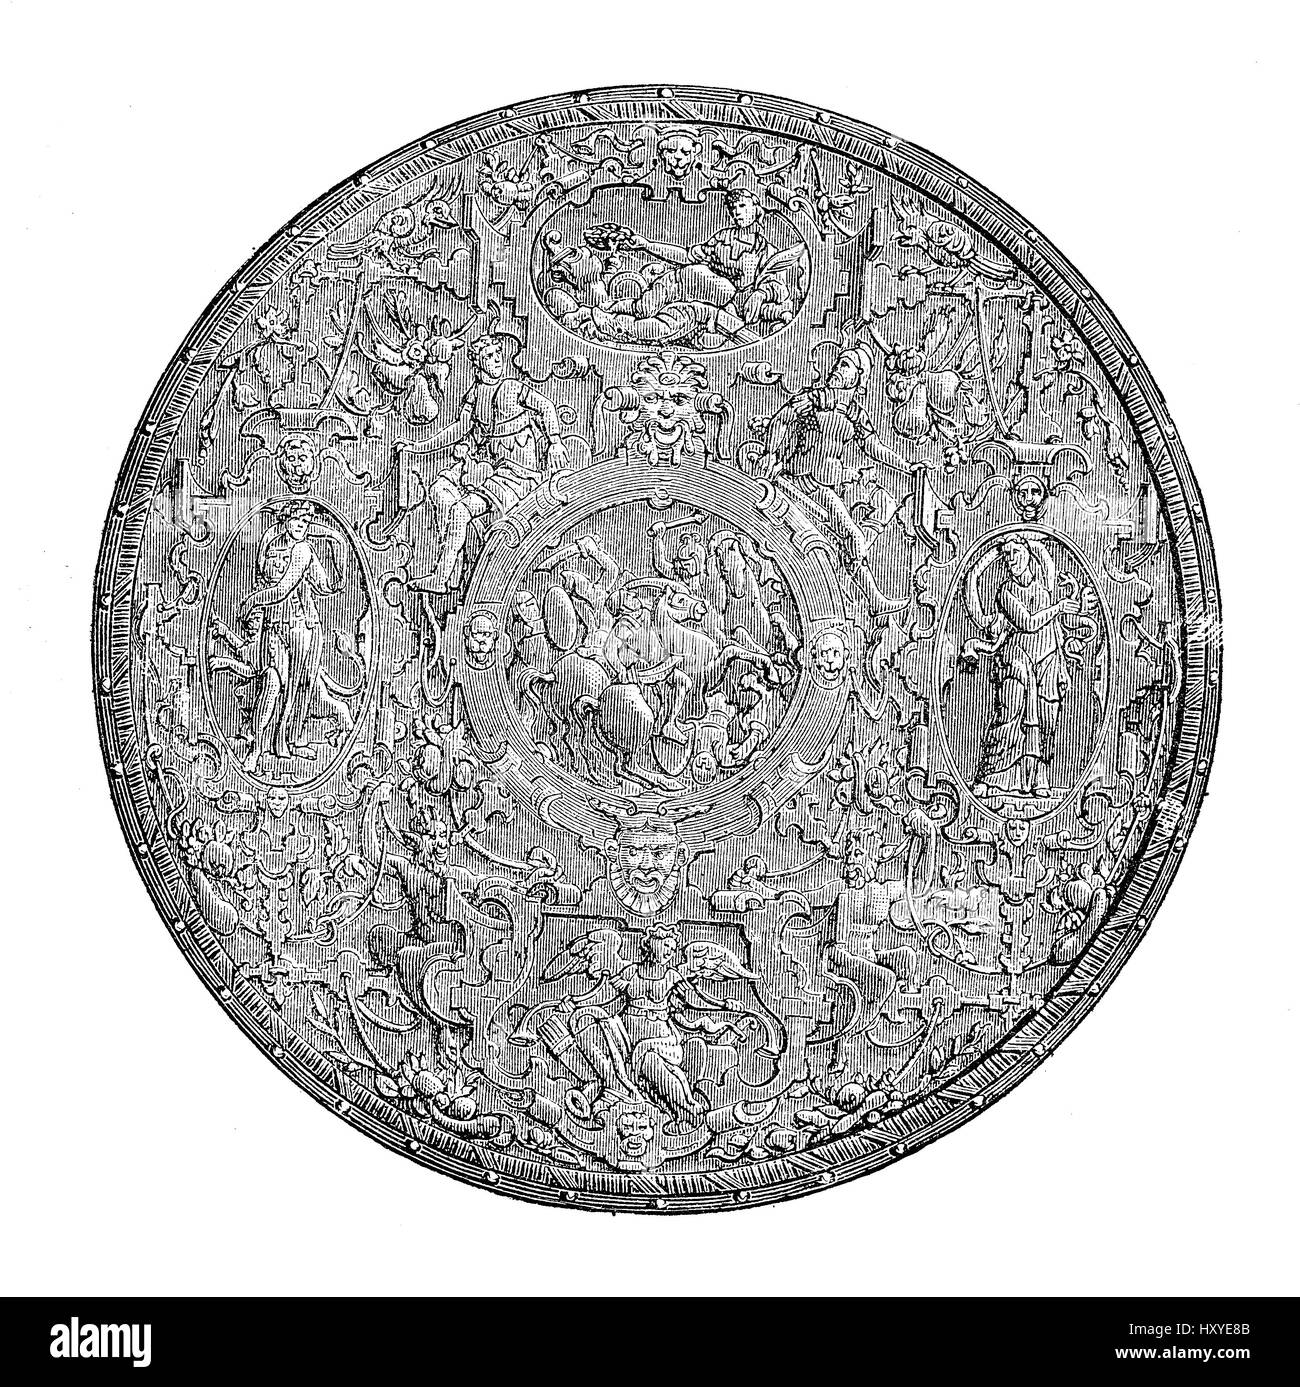 Rinascimento scudo rotondo, sbalzato e cesellato in ferro con decorazioni mitologiche, opere d'arte italiana del XVI secolo Foto Stock